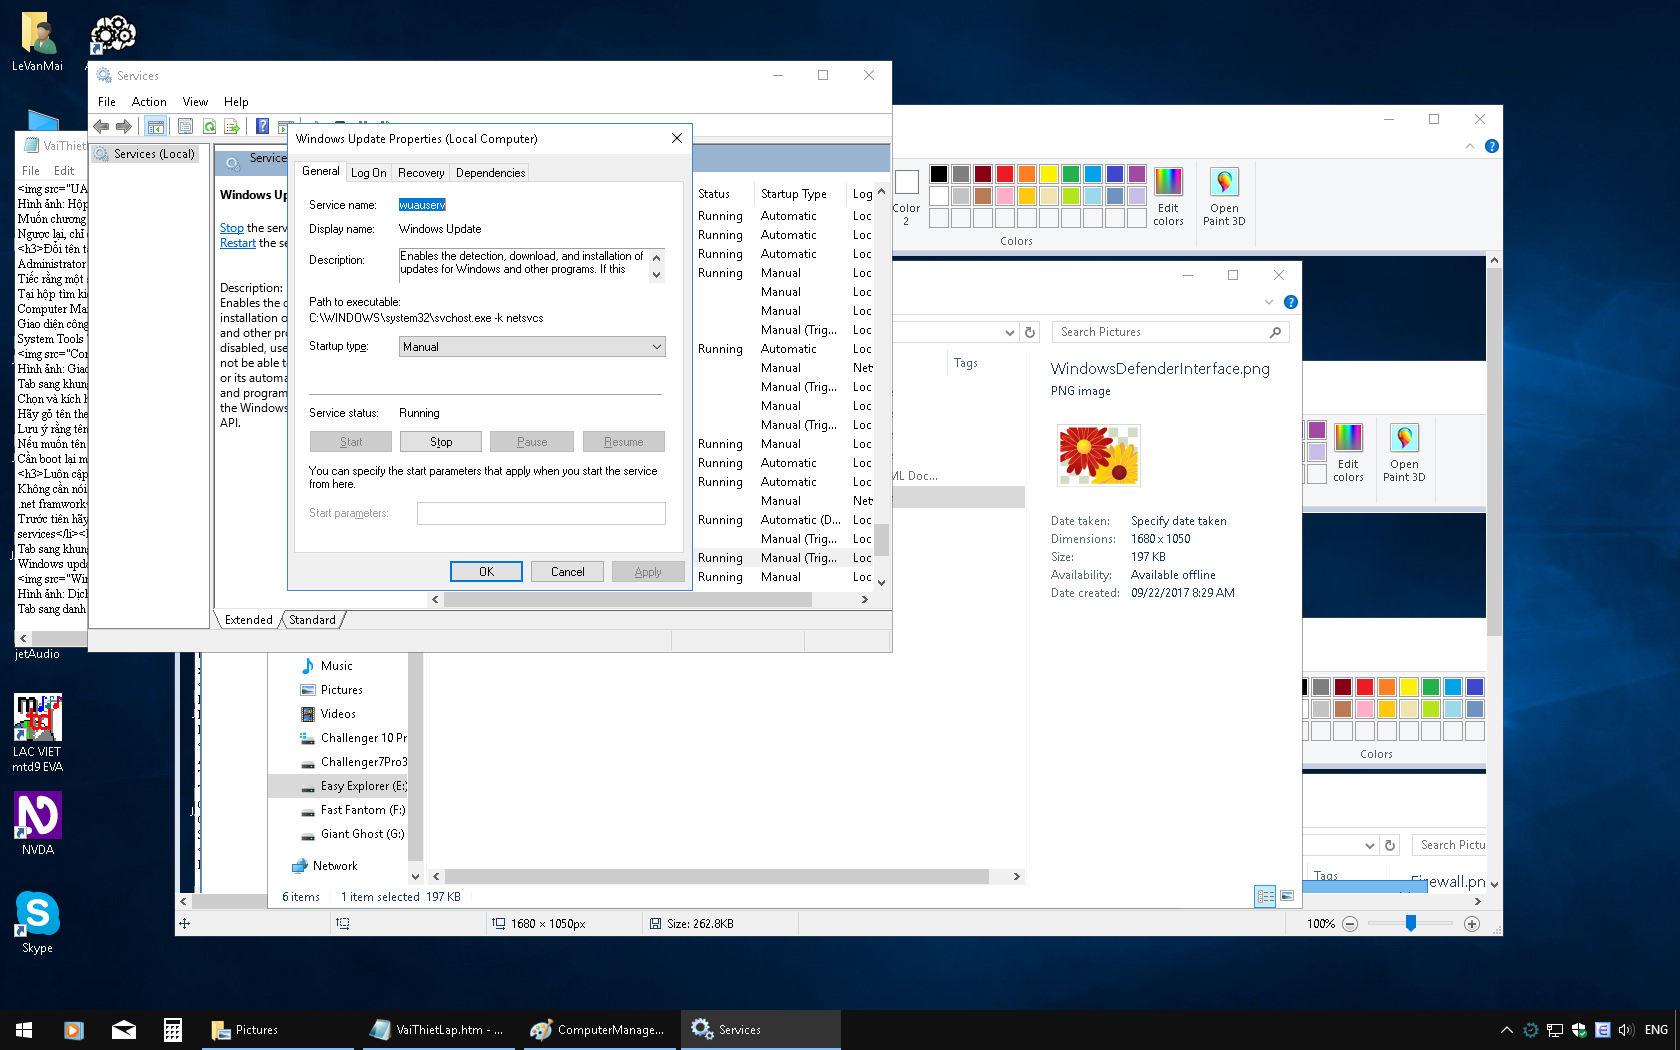 Hình ảnh: Các thuộc tính của dịch vụ Windows update